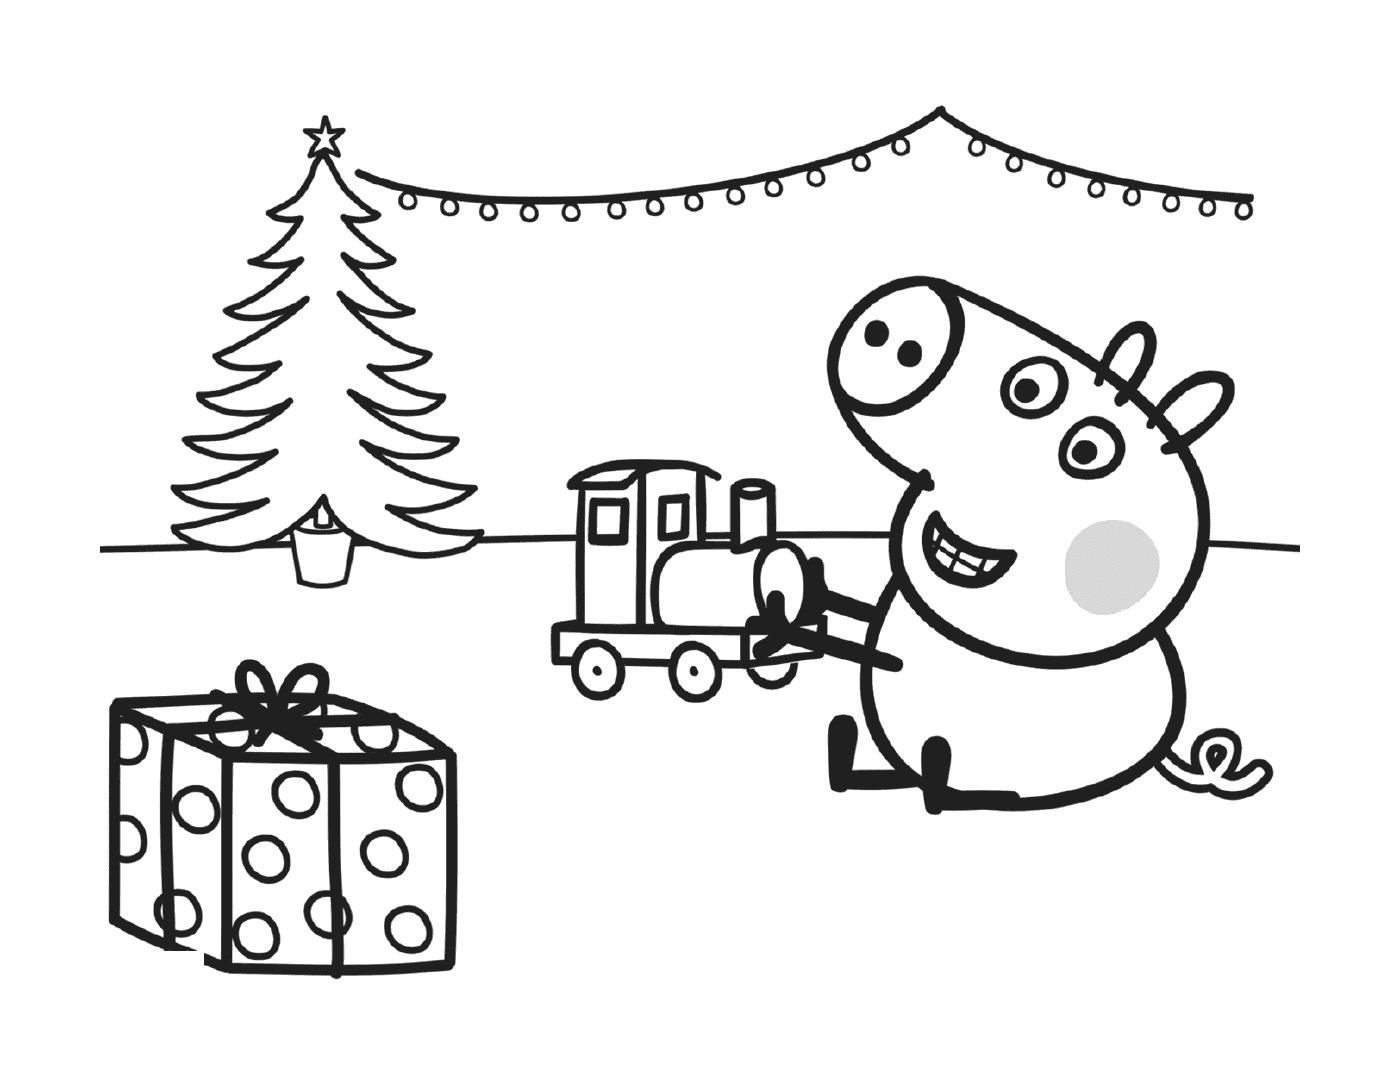  George spielt mit seinem Weihnachtsgeschenk, einem Zug 